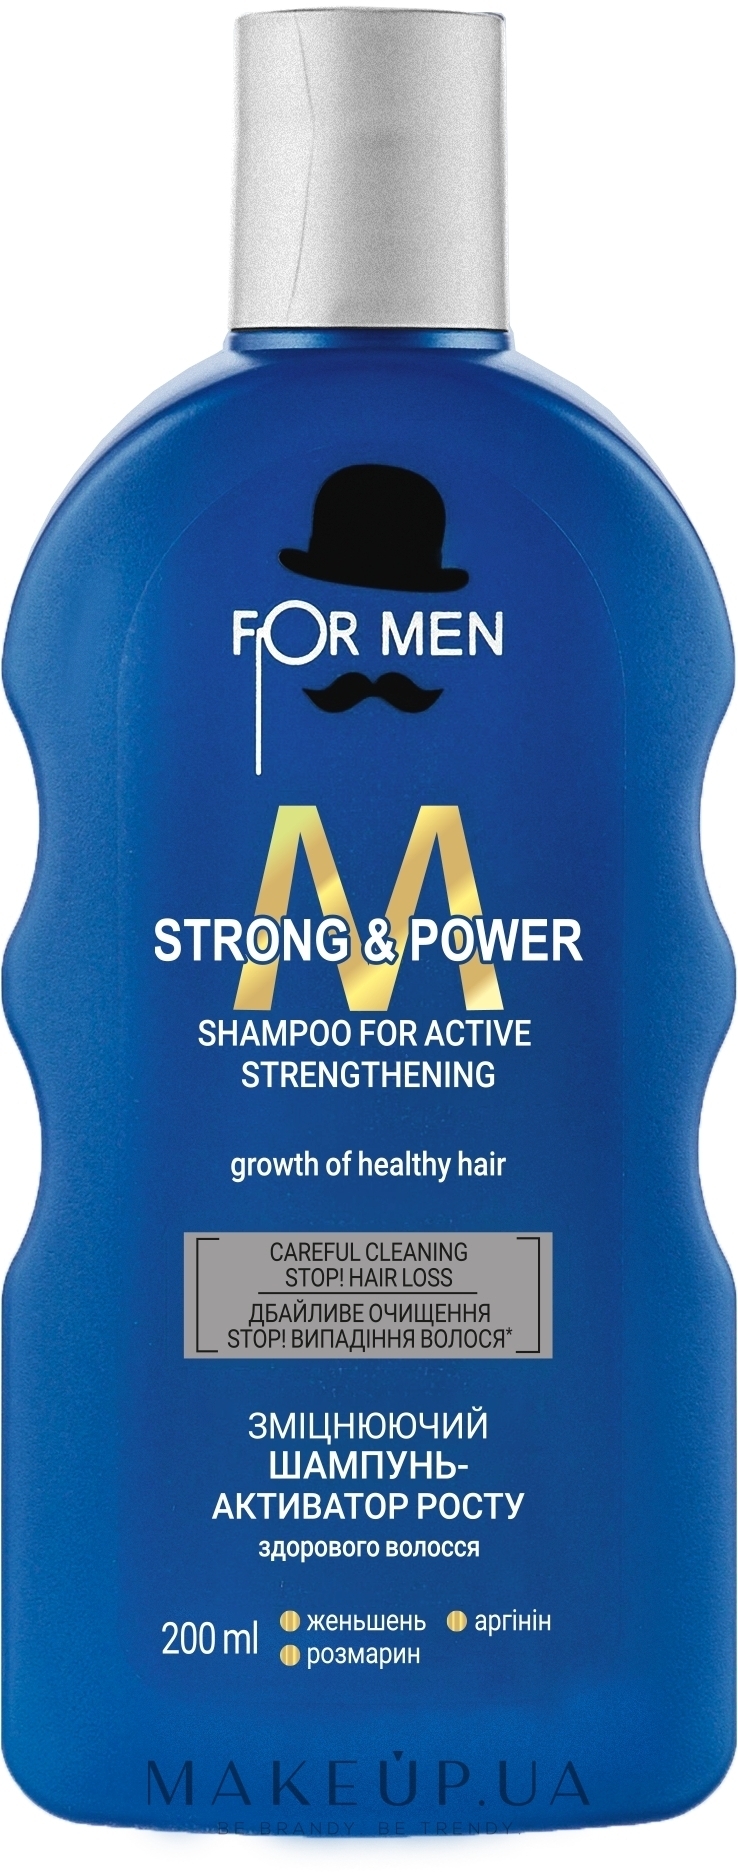 Зміцнювальний шампунь-активатор для росту здорового волосся - For Men Strong & Power Shampoo — фото 200ml